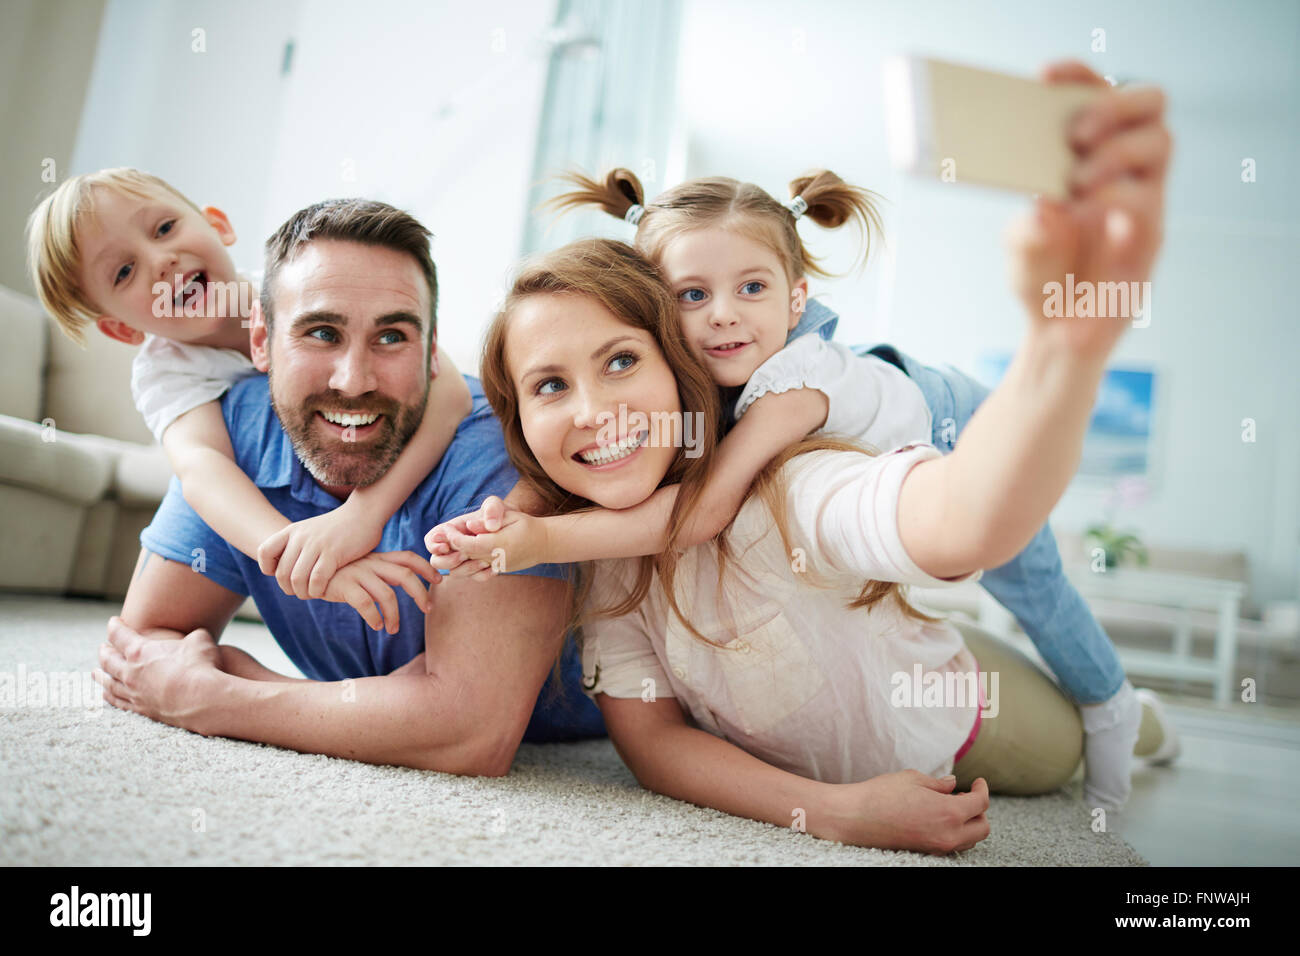 Glückliche junge Familien nehmen Selfie auf dem Boden zu Hause Stockfoto